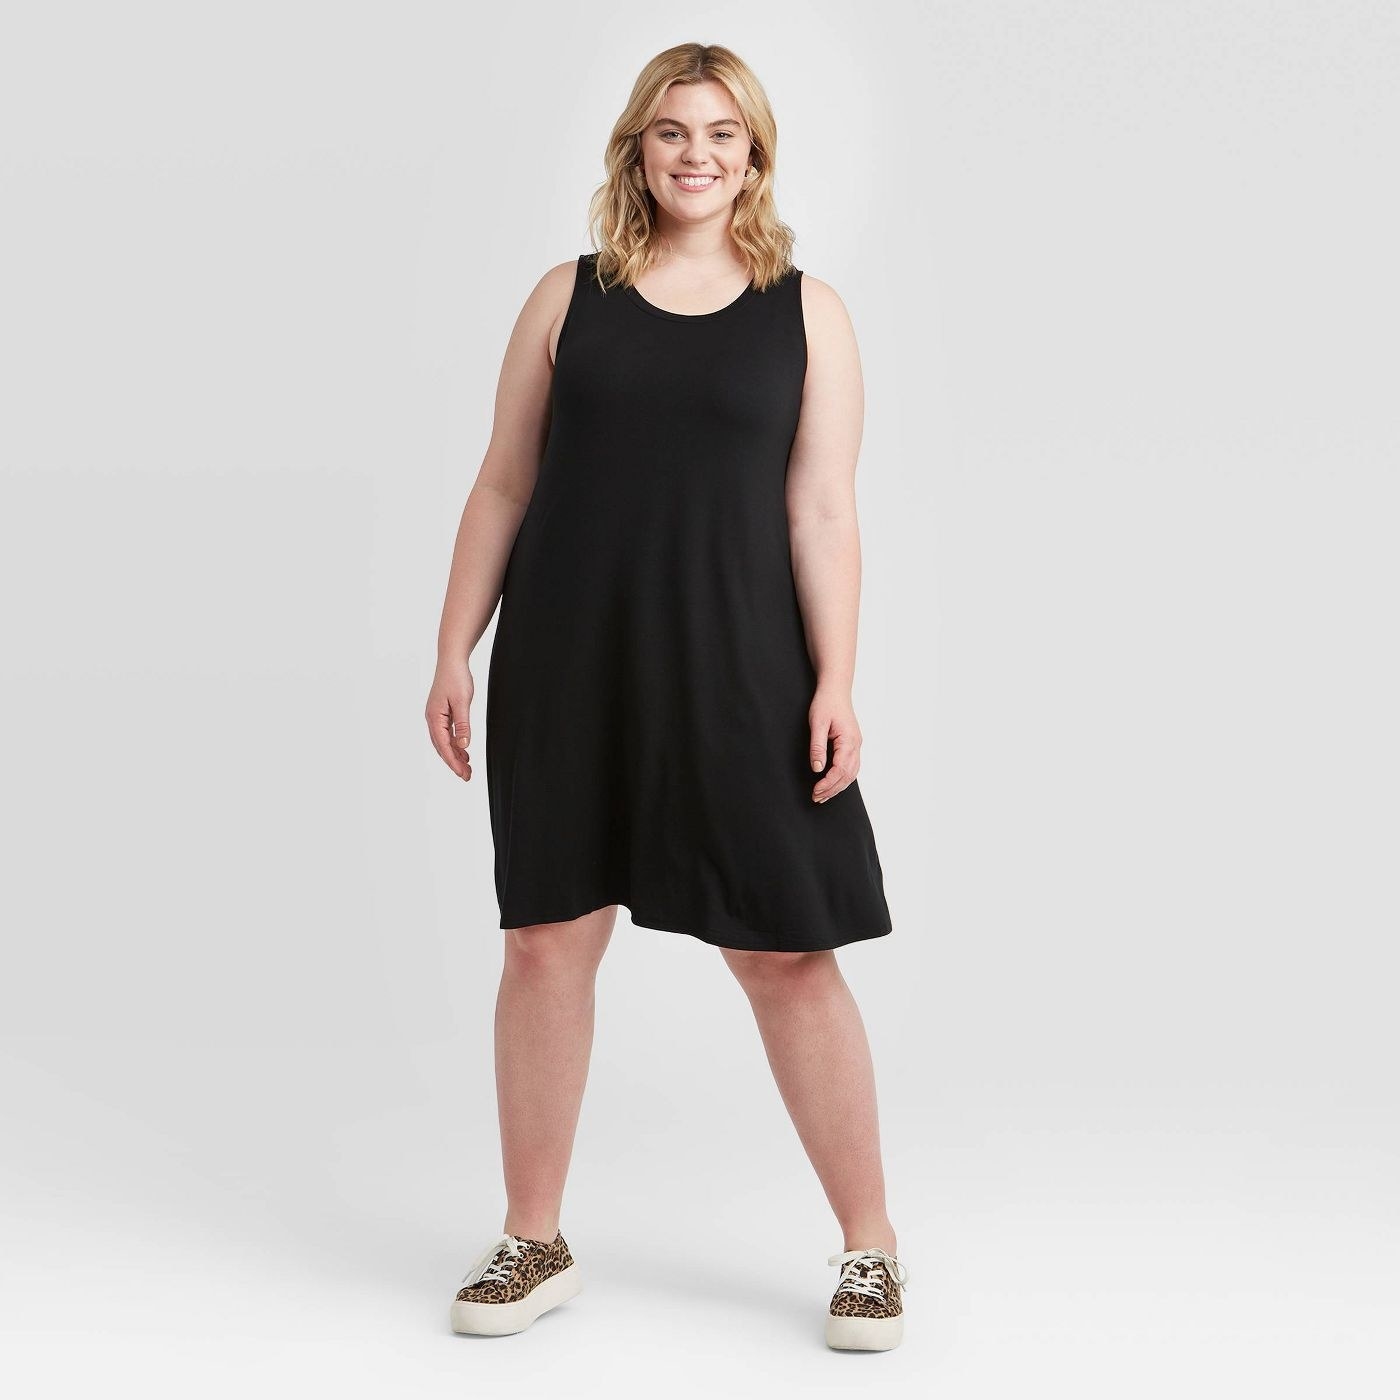 A model wearing a black tank swing dress